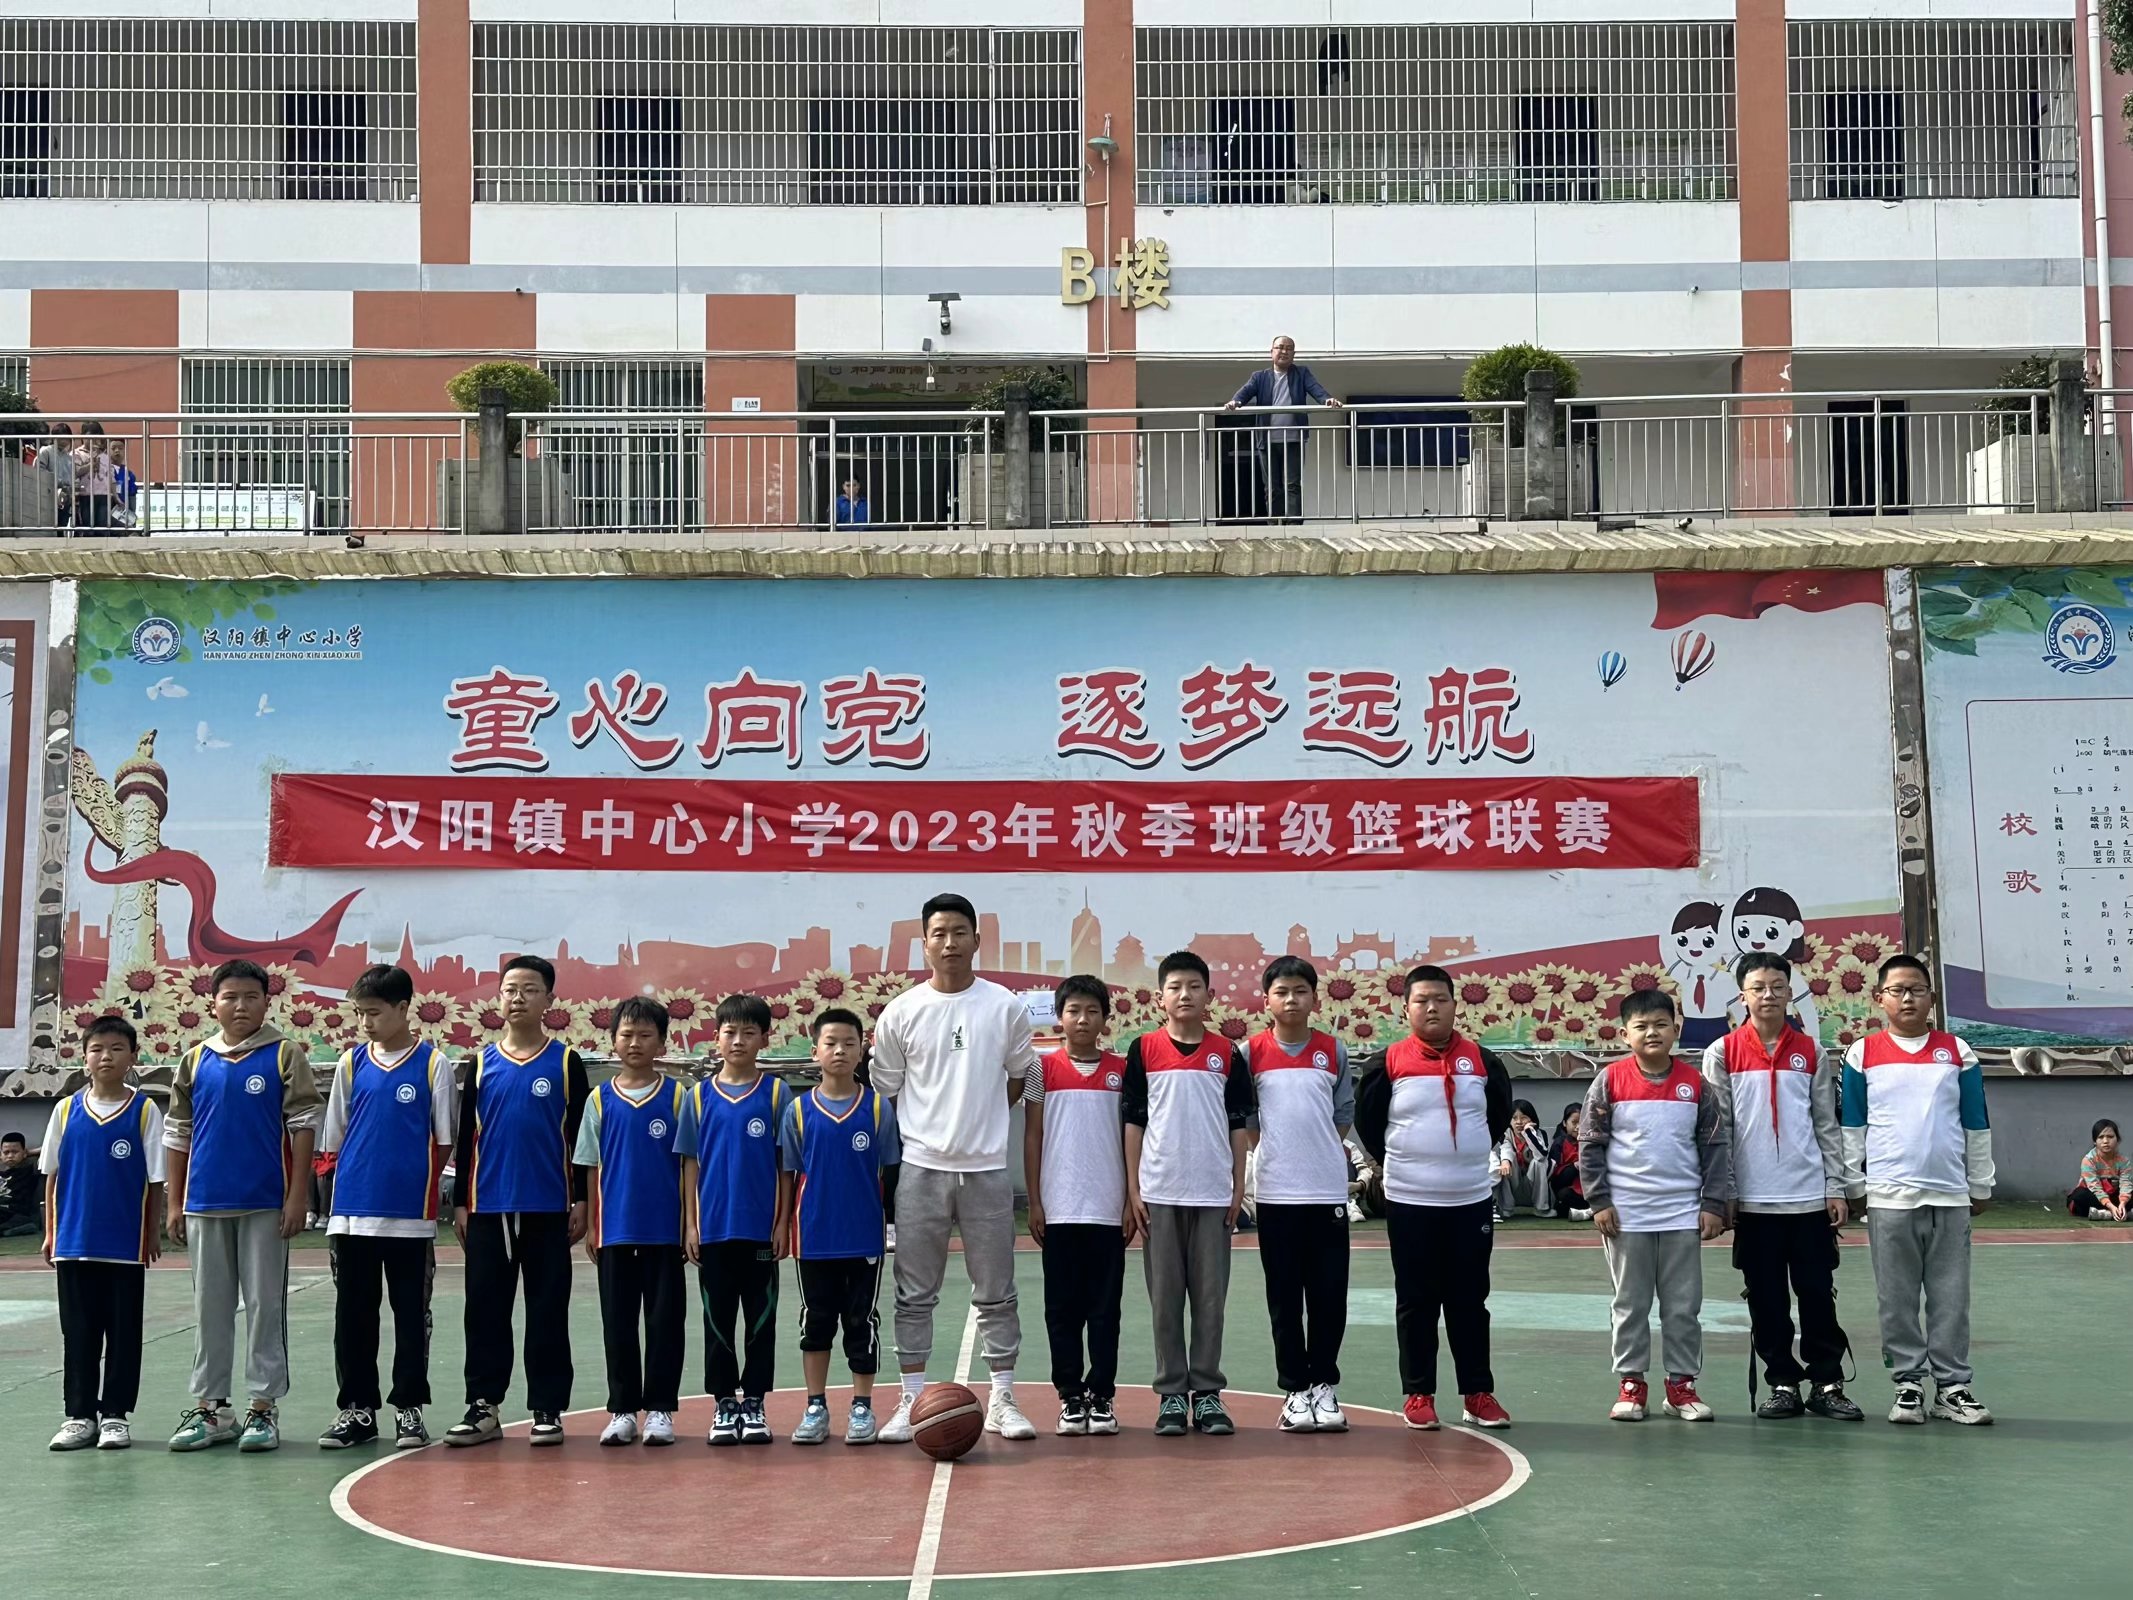 汉阴县汉阳镇中心小学班级篮球联赛火热开赛